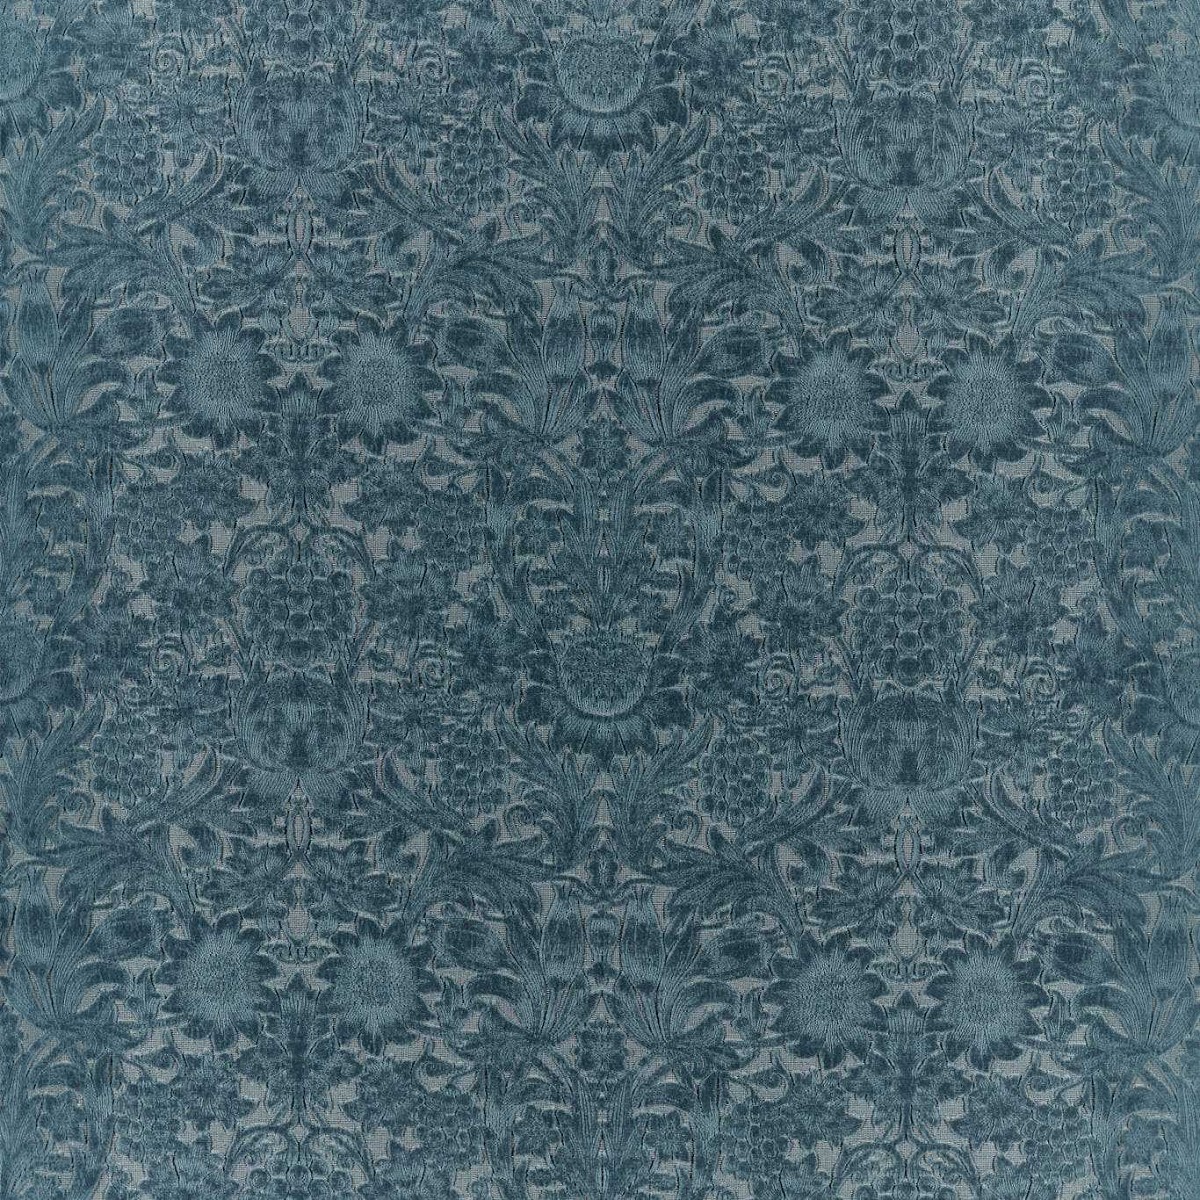 Sunflower Caffoy Velvet Webbs Blue Fabric by William Morris & Co.